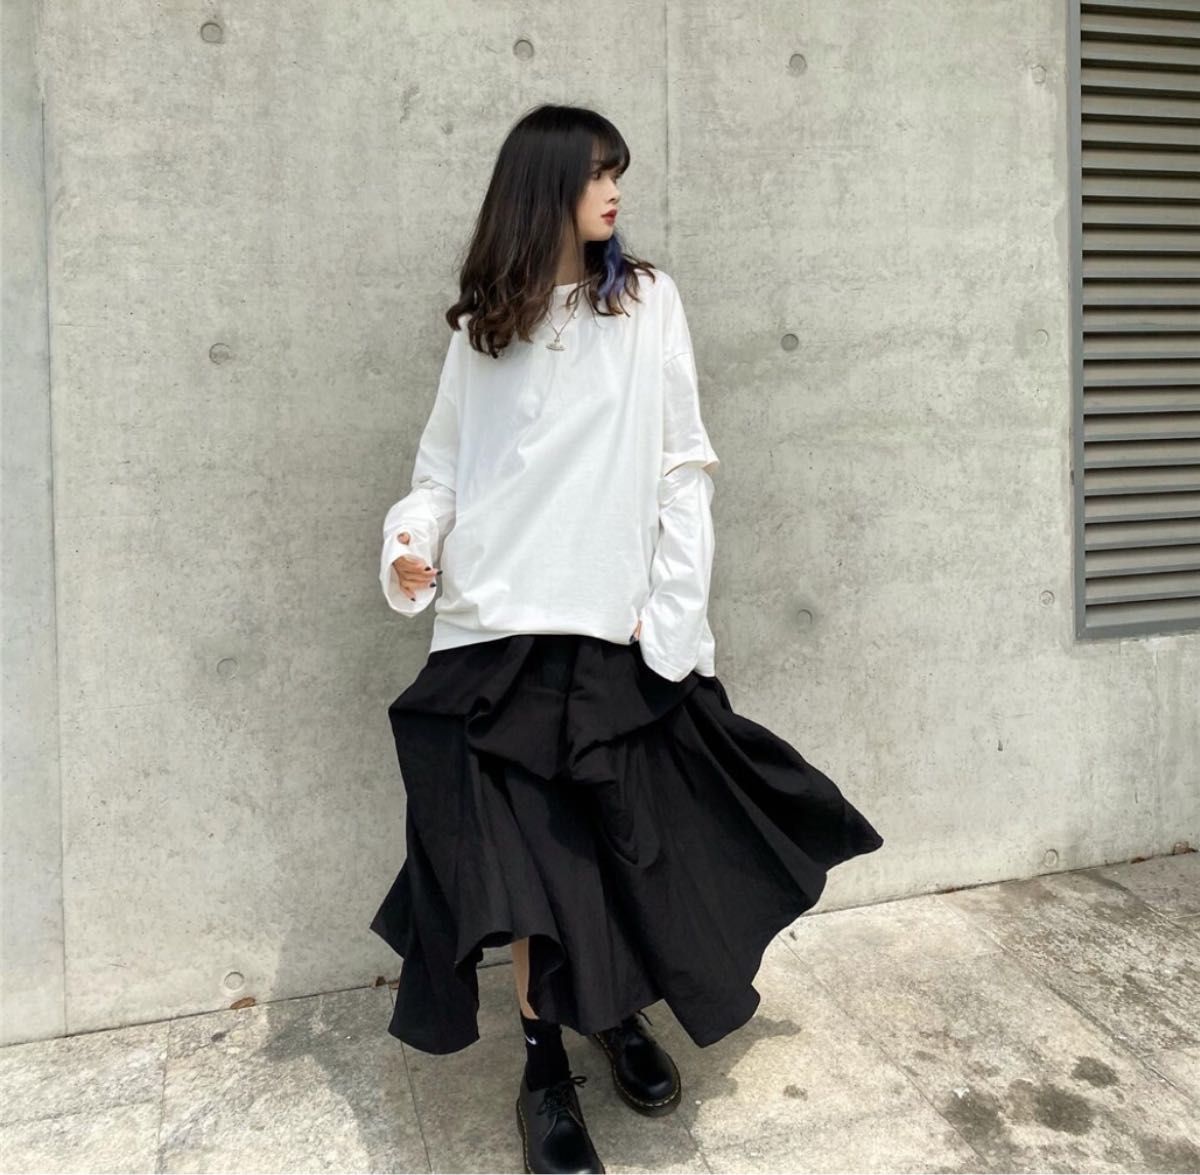 フレアスカート 袴 黒 ロングスカート レディース ユニセックス ブラック ゆったり カジュアル